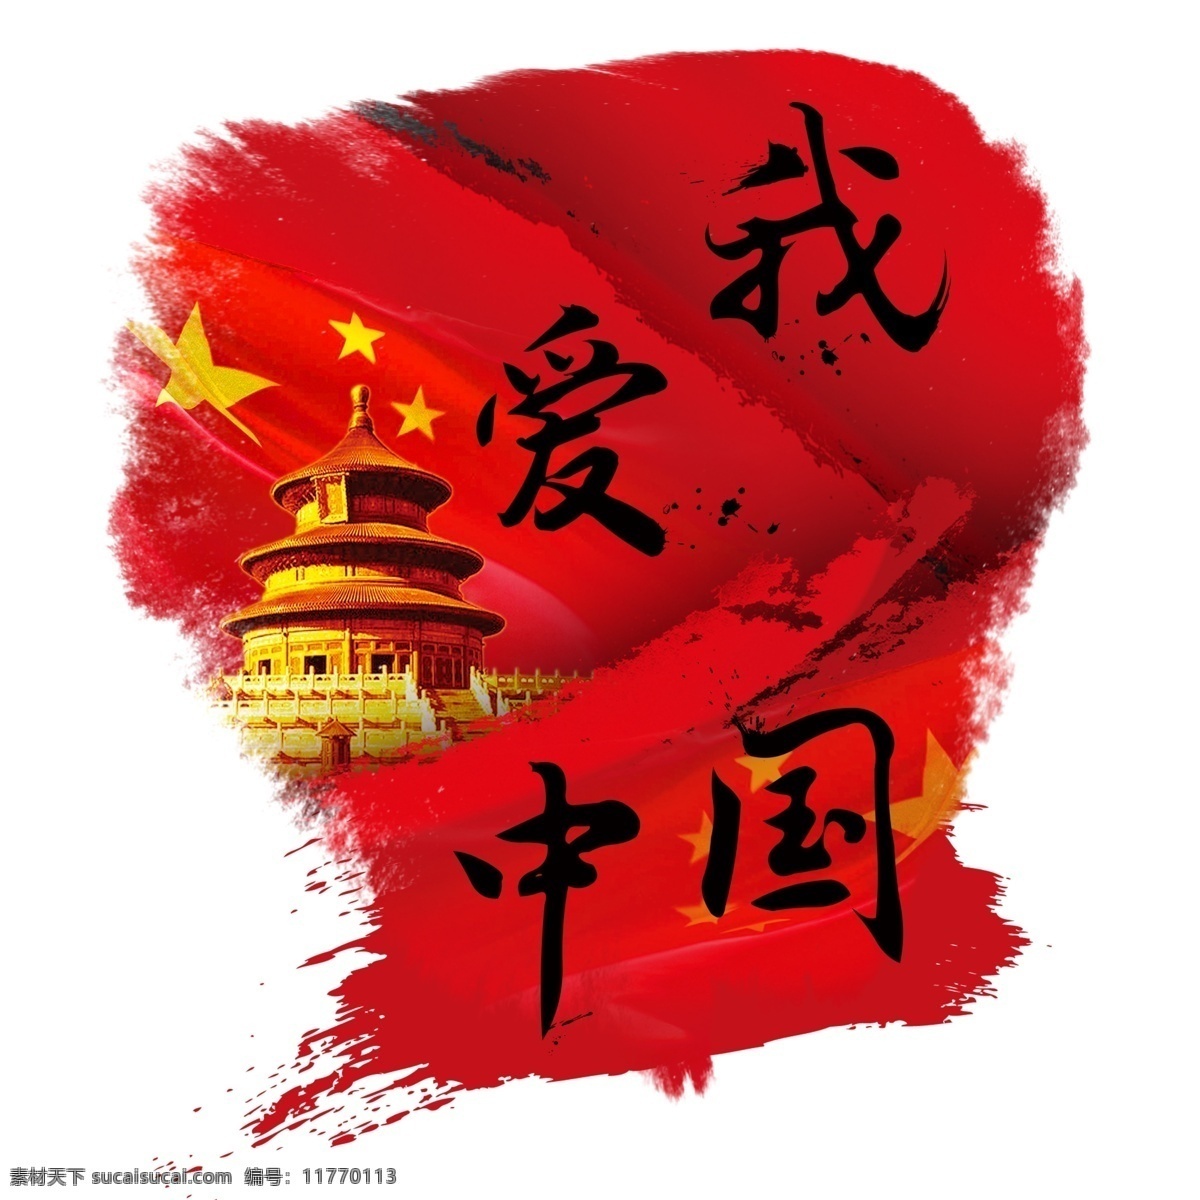 我爱 中国 泼墨 毛笔字 国旗 北京 天坛 黑色 字体 艺术 字 我爱中国 红色 艺术字